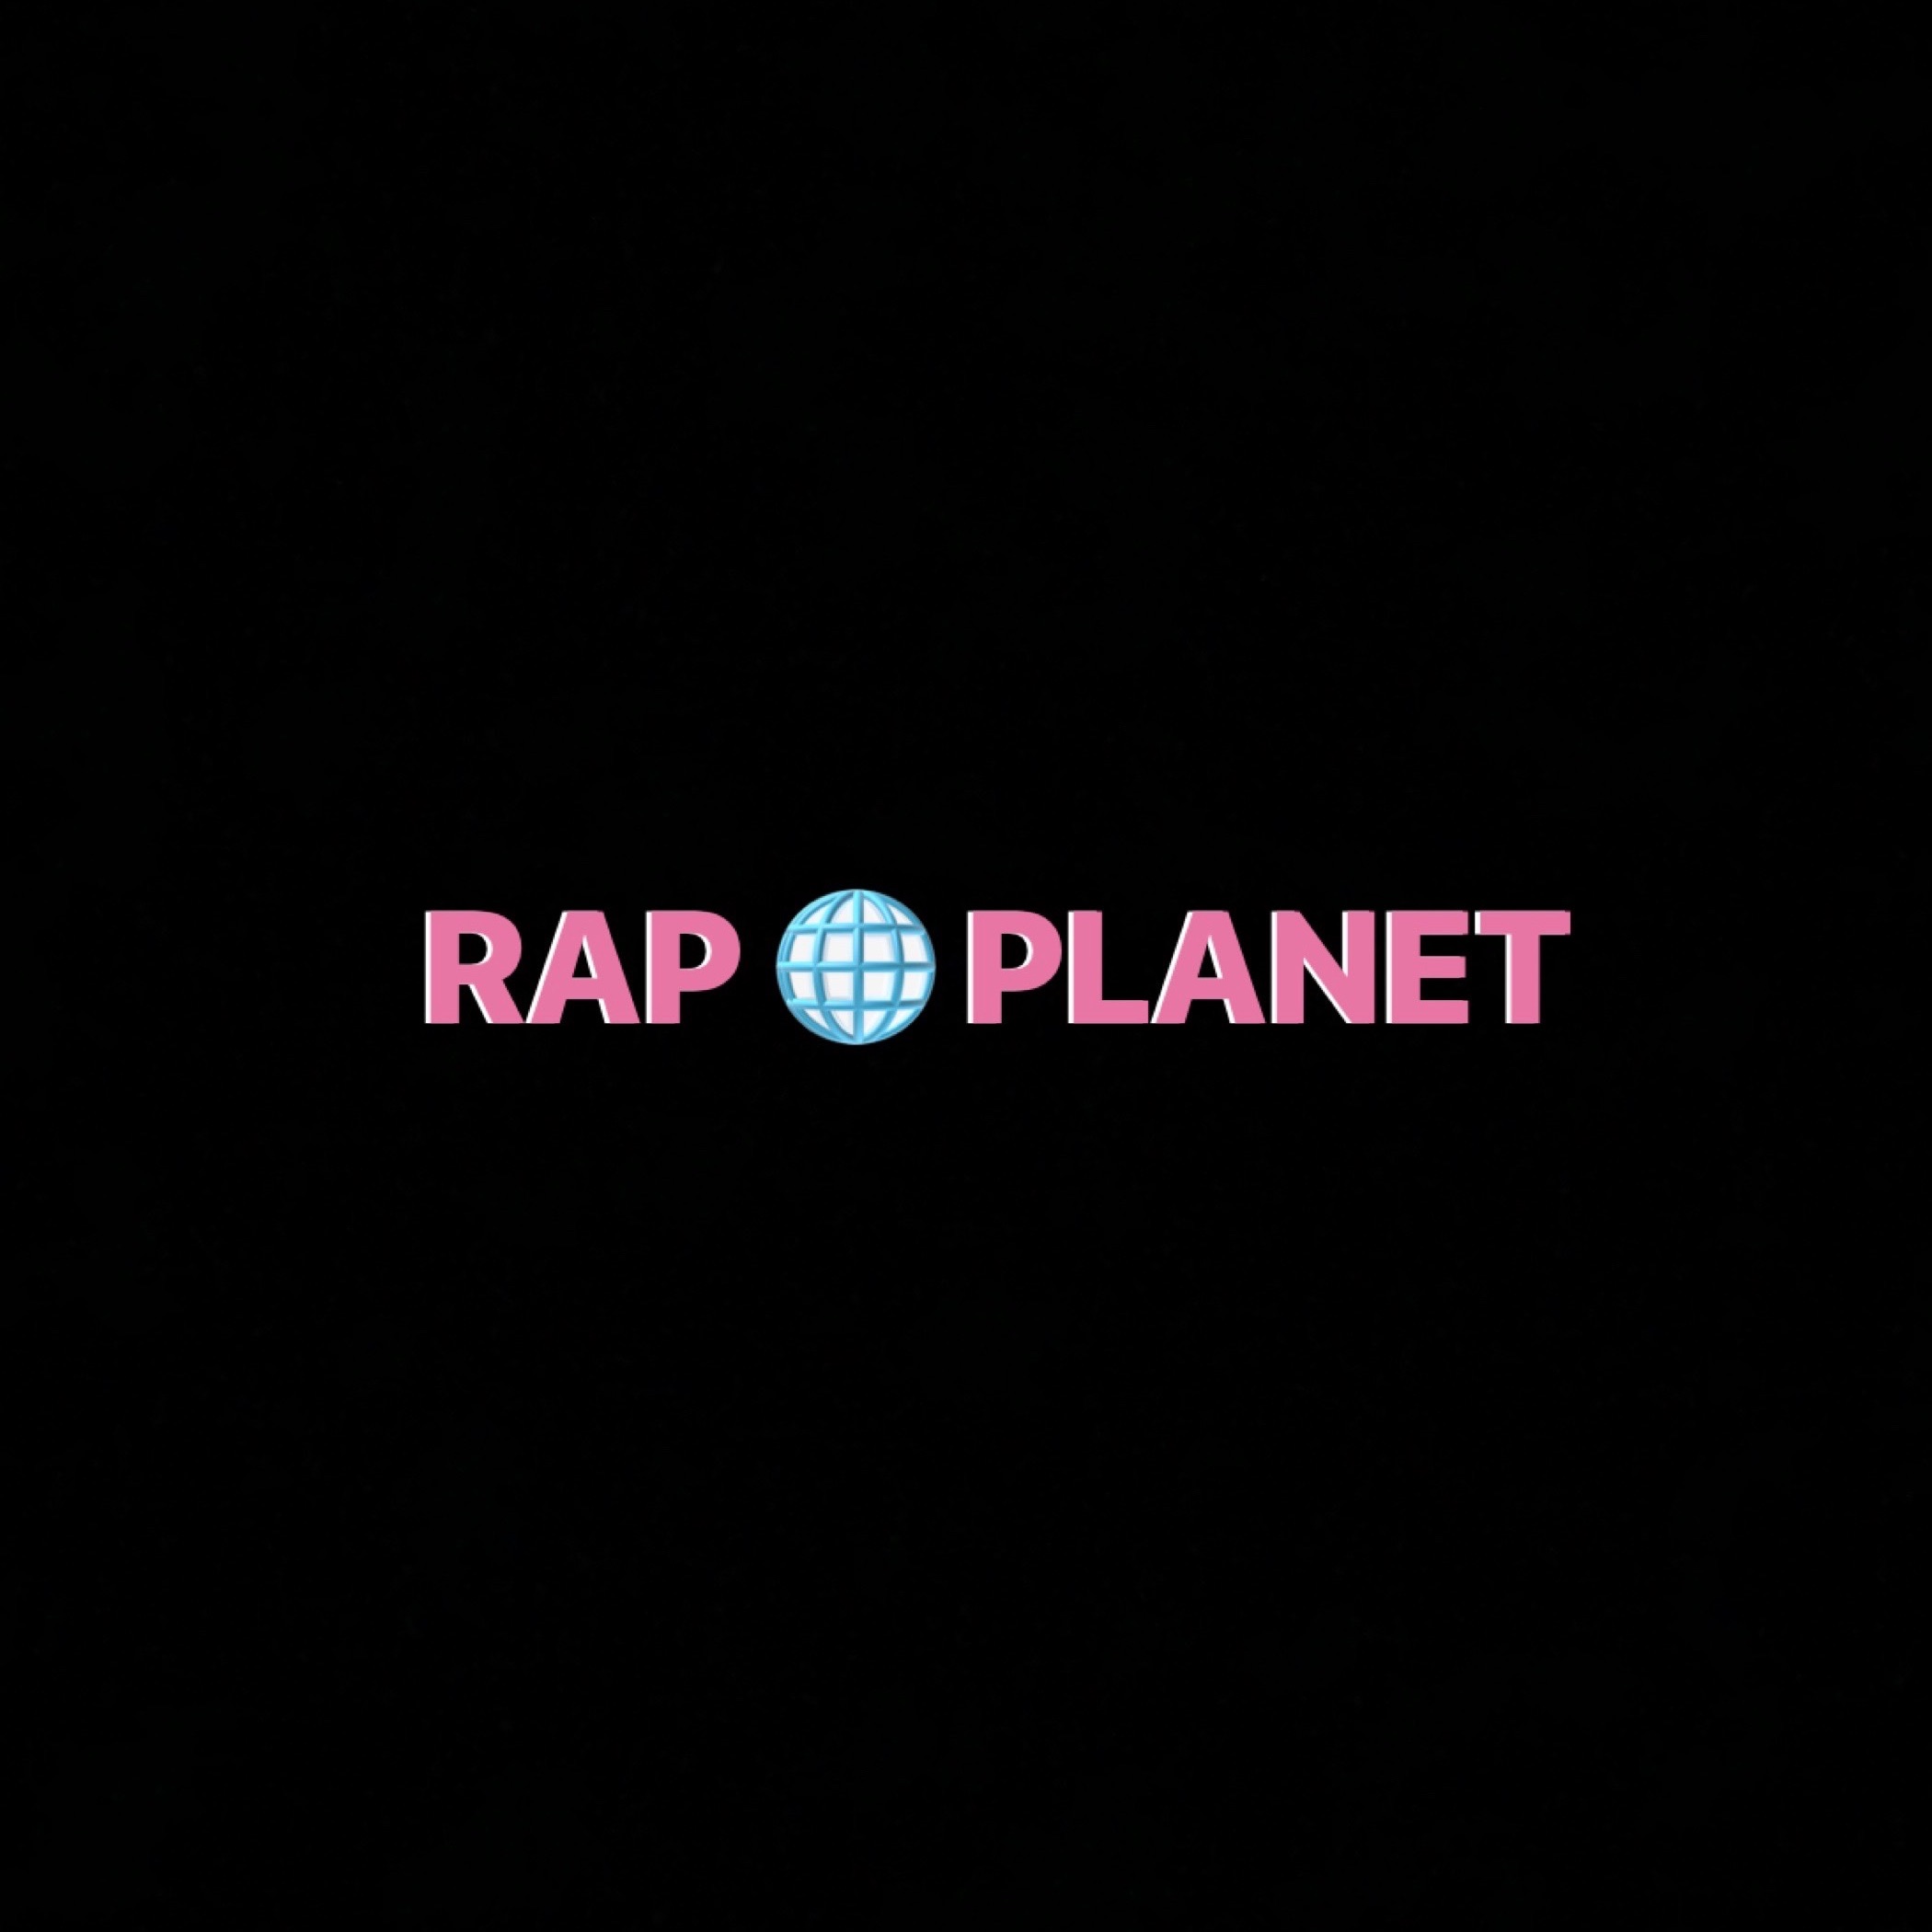 Rap Planet